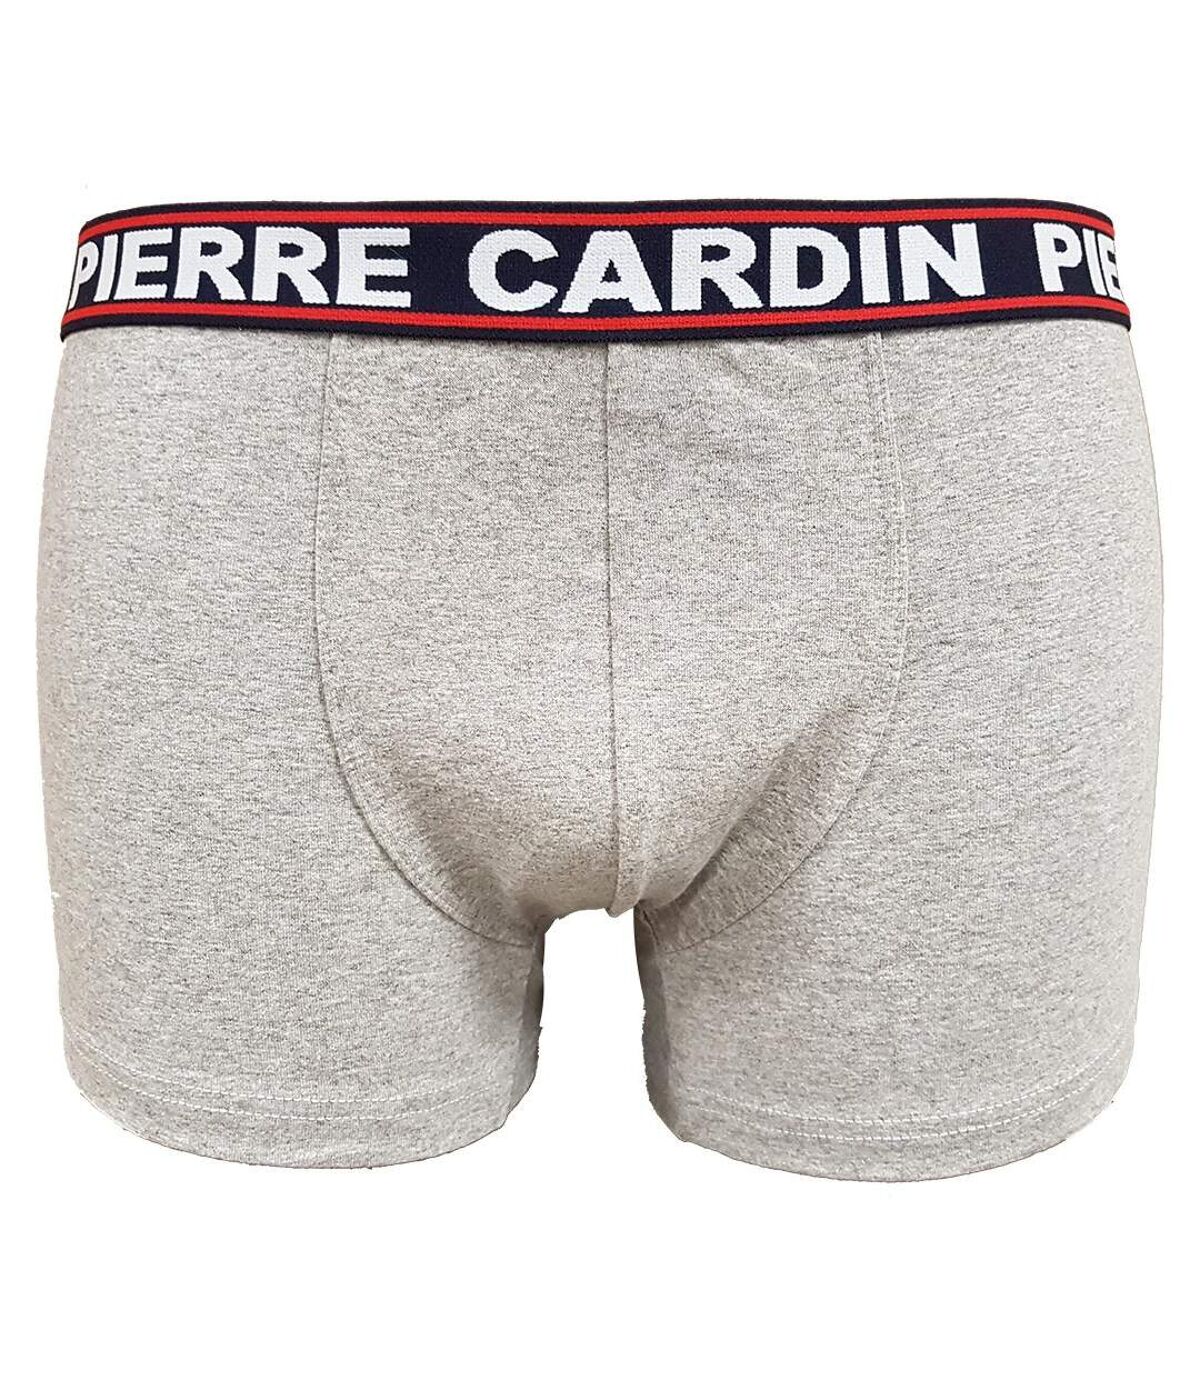 Boxer homme PIERRE CARDIN Confort et Qualité -Assortiment modèles photos selon arrivages- Pack de 6 Boxers coton